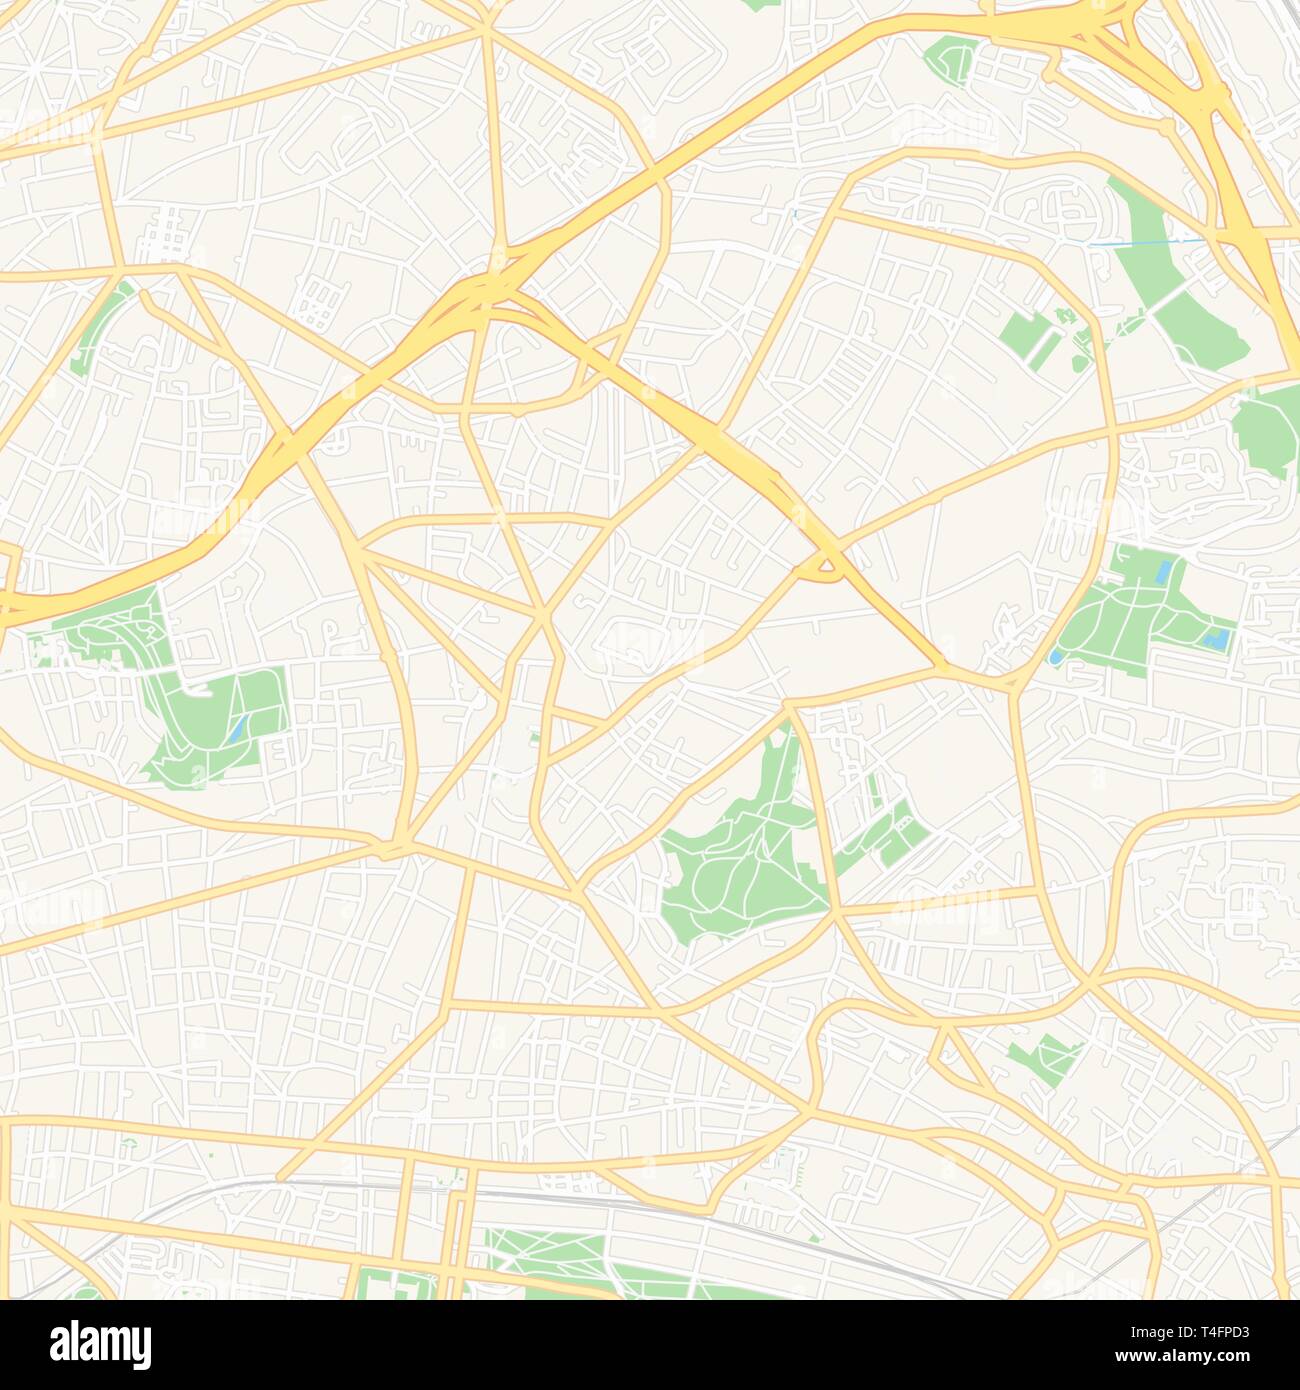 Druckbare Karte von Montreuil, Frankreich mit Haupt- und Nebenstraßen und größere Bahnen. Diese Karte ist sorgfältig für Routing und Inverkehrbringen individua konzipiert Stock Vektor